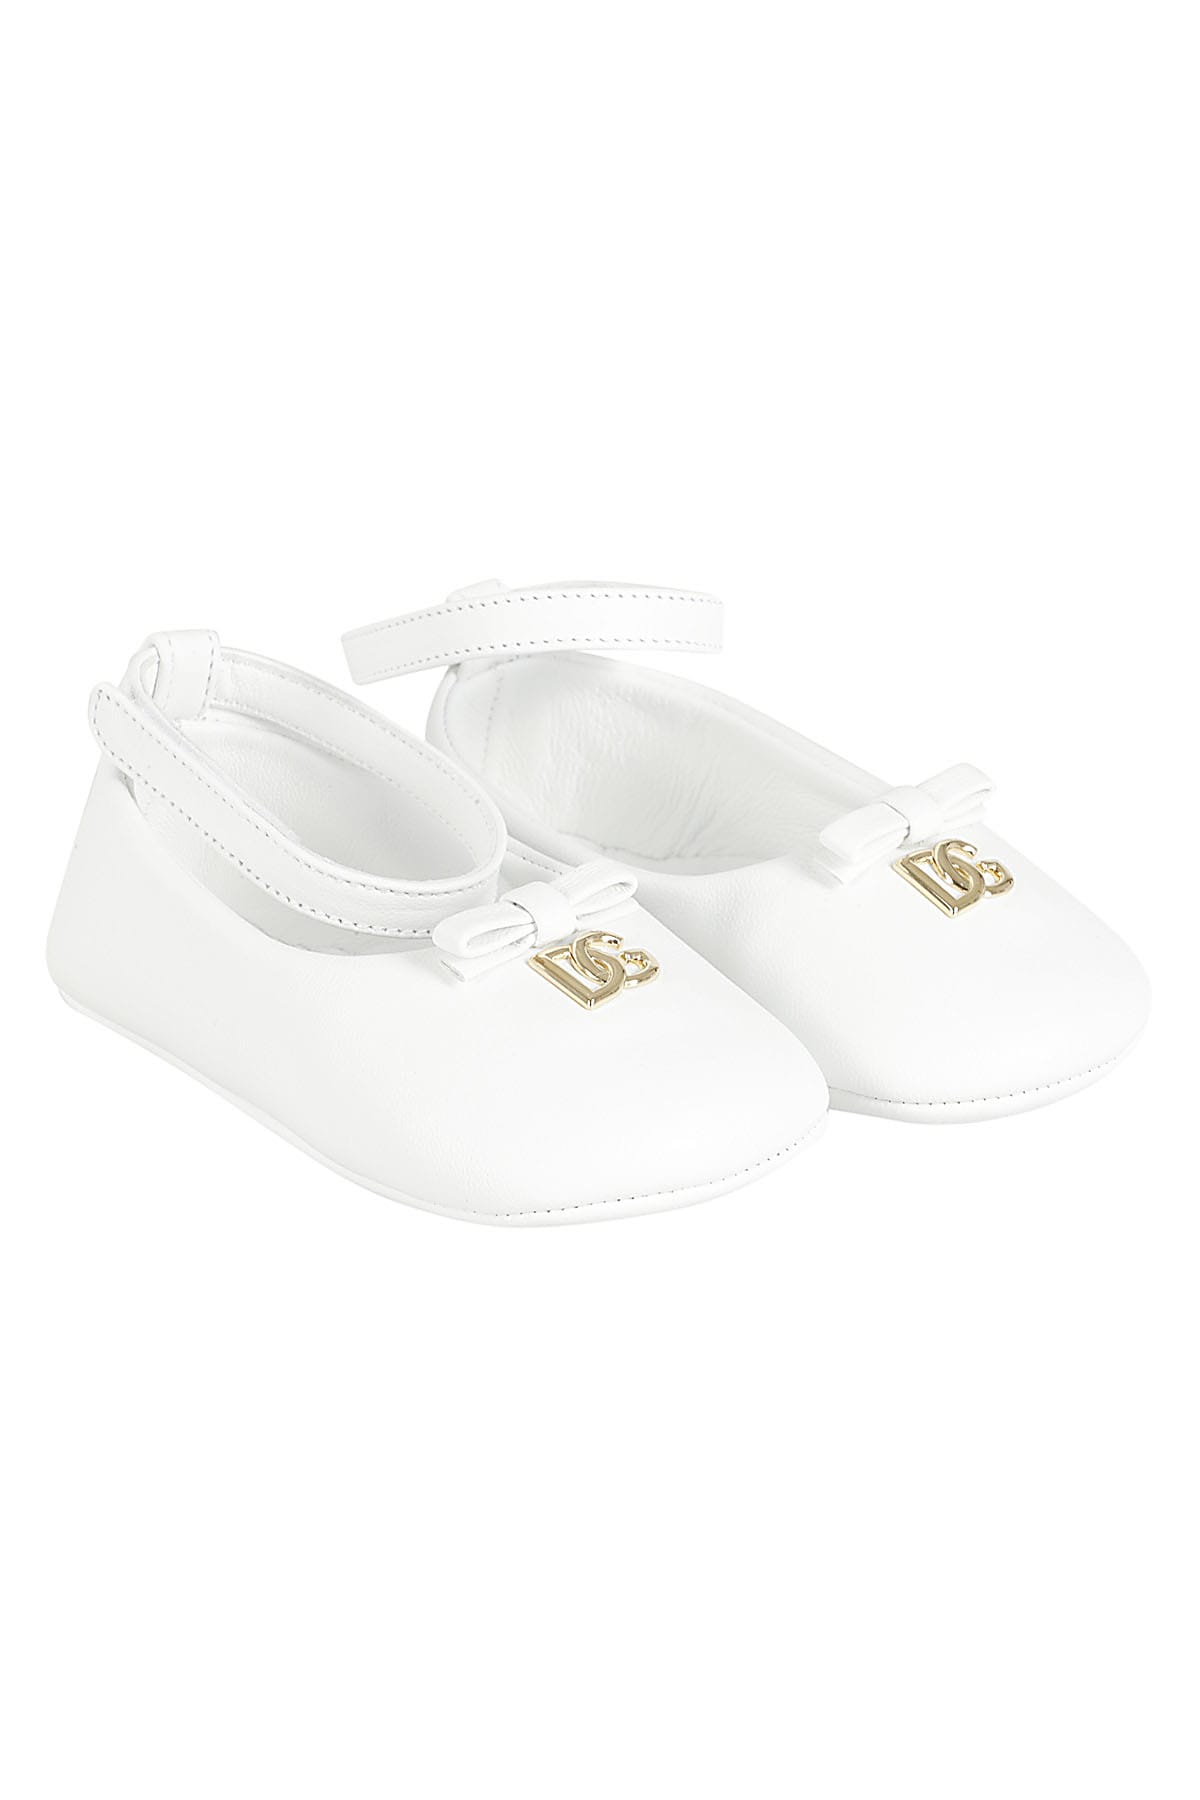 Dolce & Gabbana Kids' Ballerina In Bianco